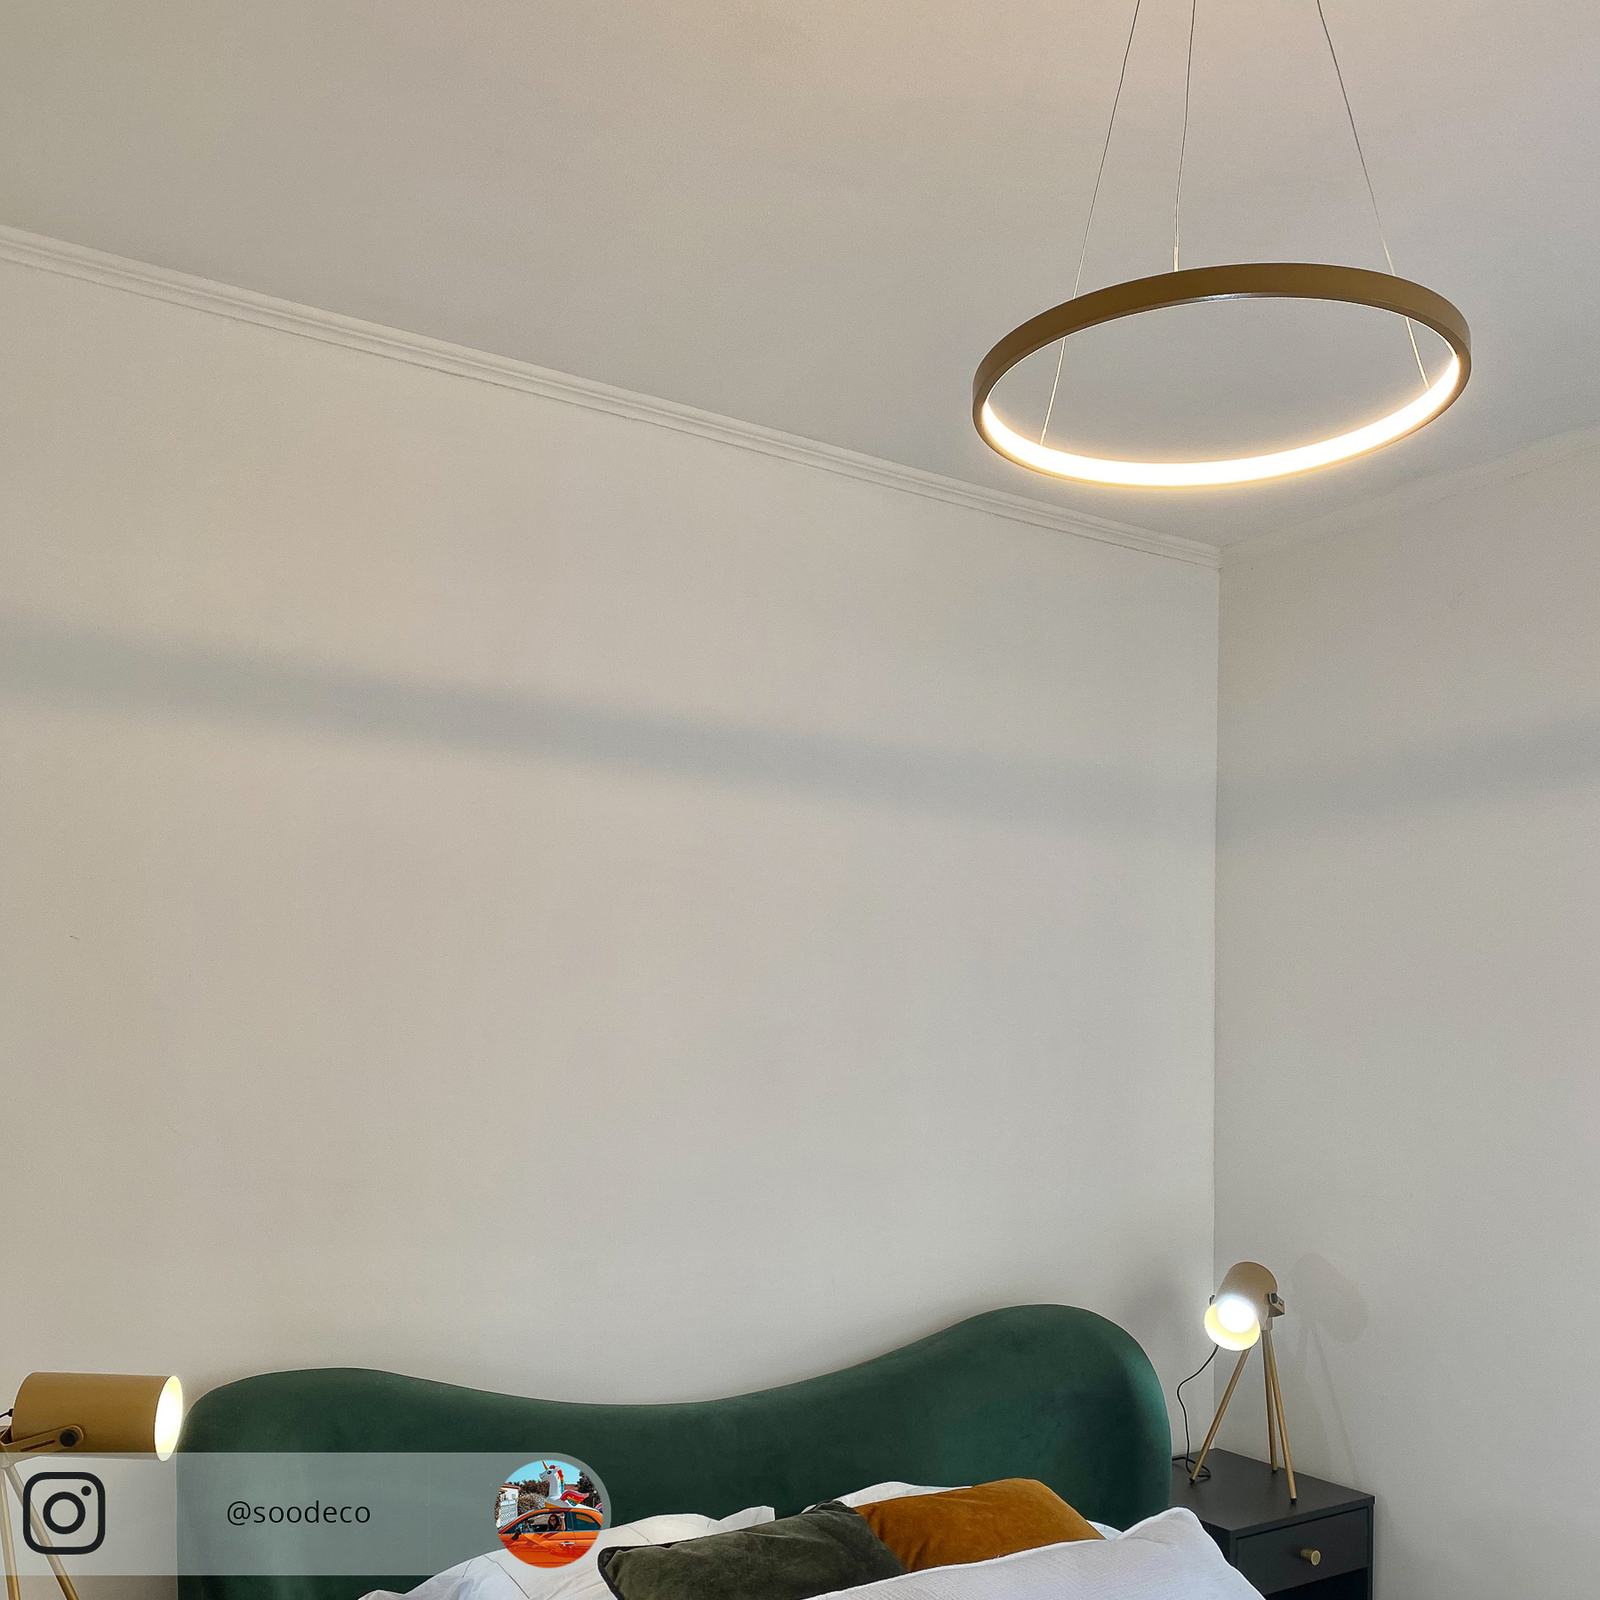 LED závěsné světlo Circle, zlatá, Ø 39 cm